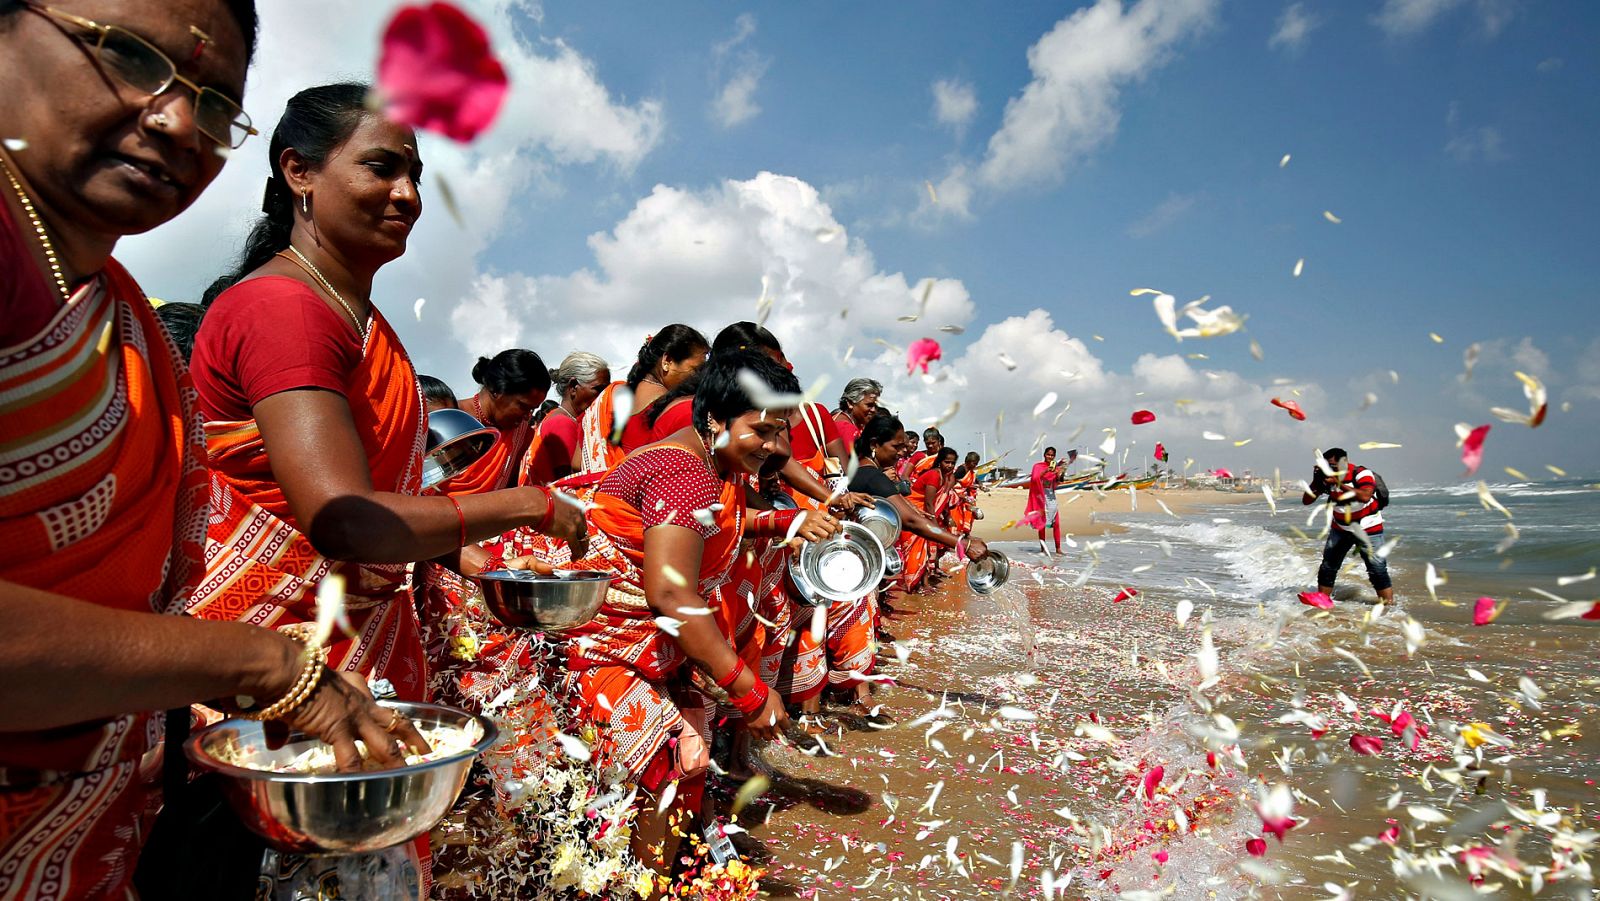 Aniversario - Quince años del tsunami que arrasó las costas de Asia y causó 230.000 muertos